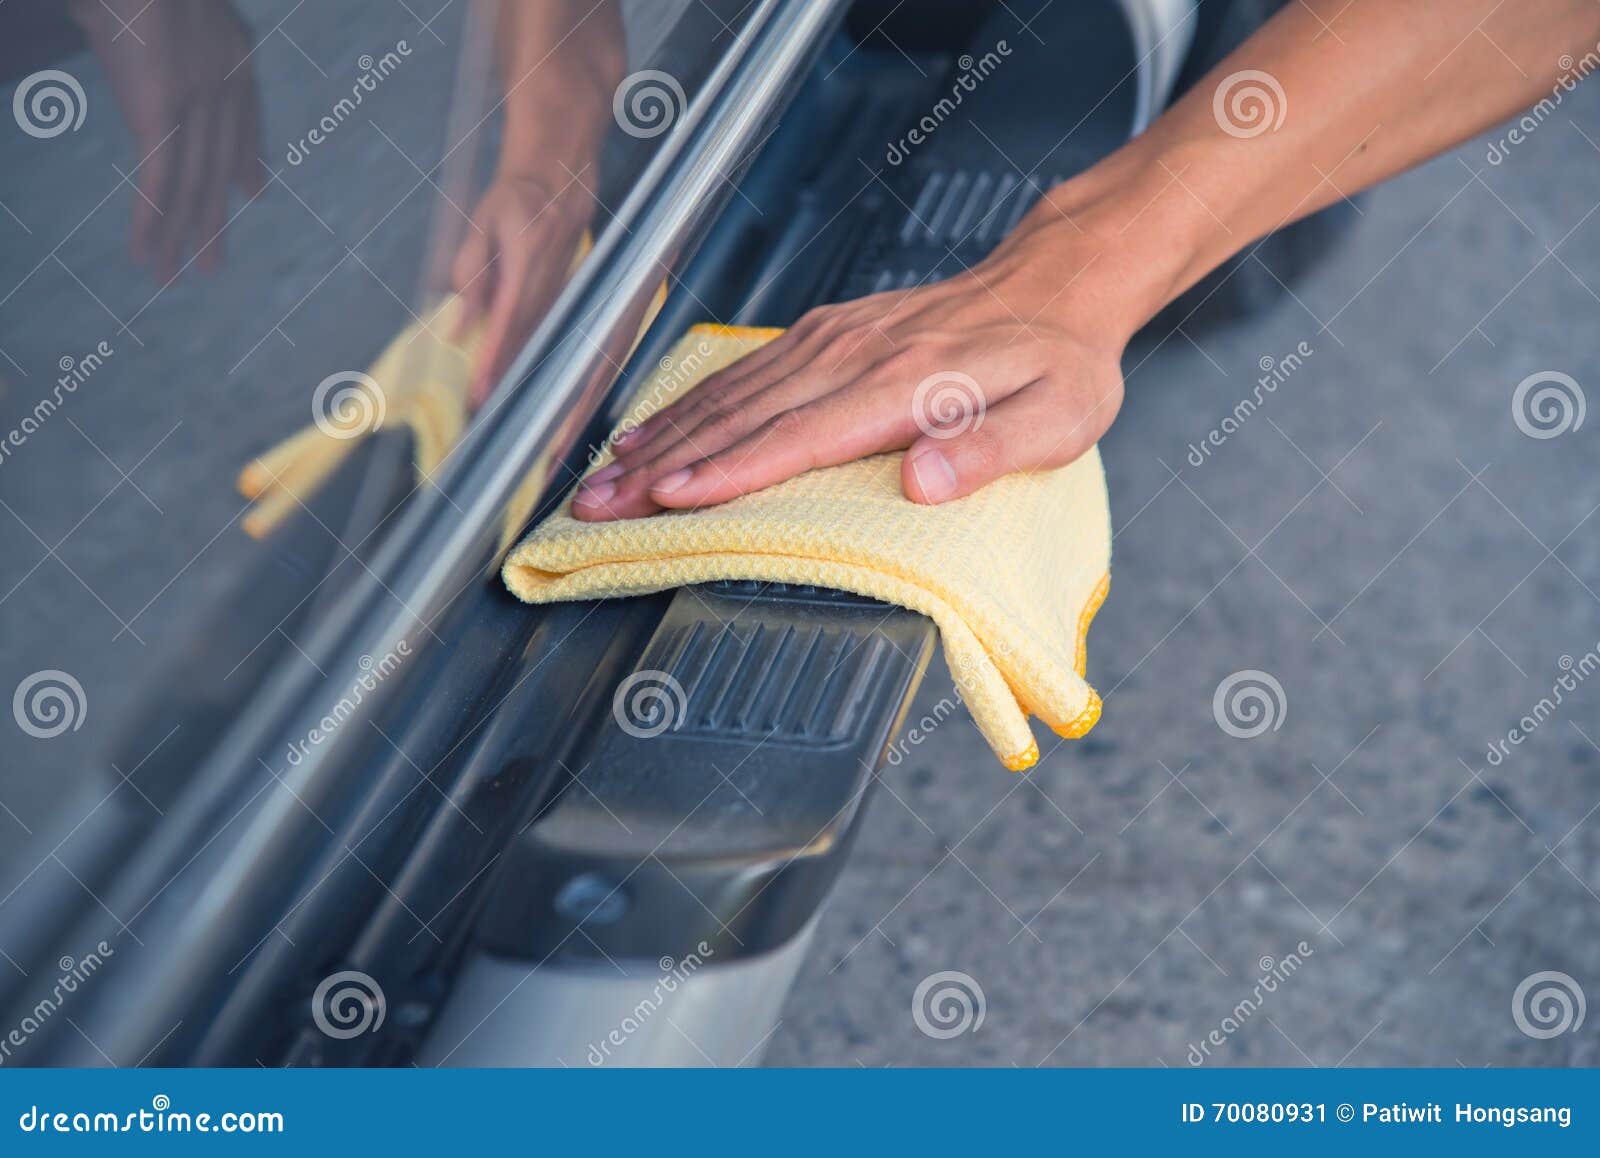 Очищать автомобиль. Вручите wipe очищая автомобиль с желтой тканью microfiber